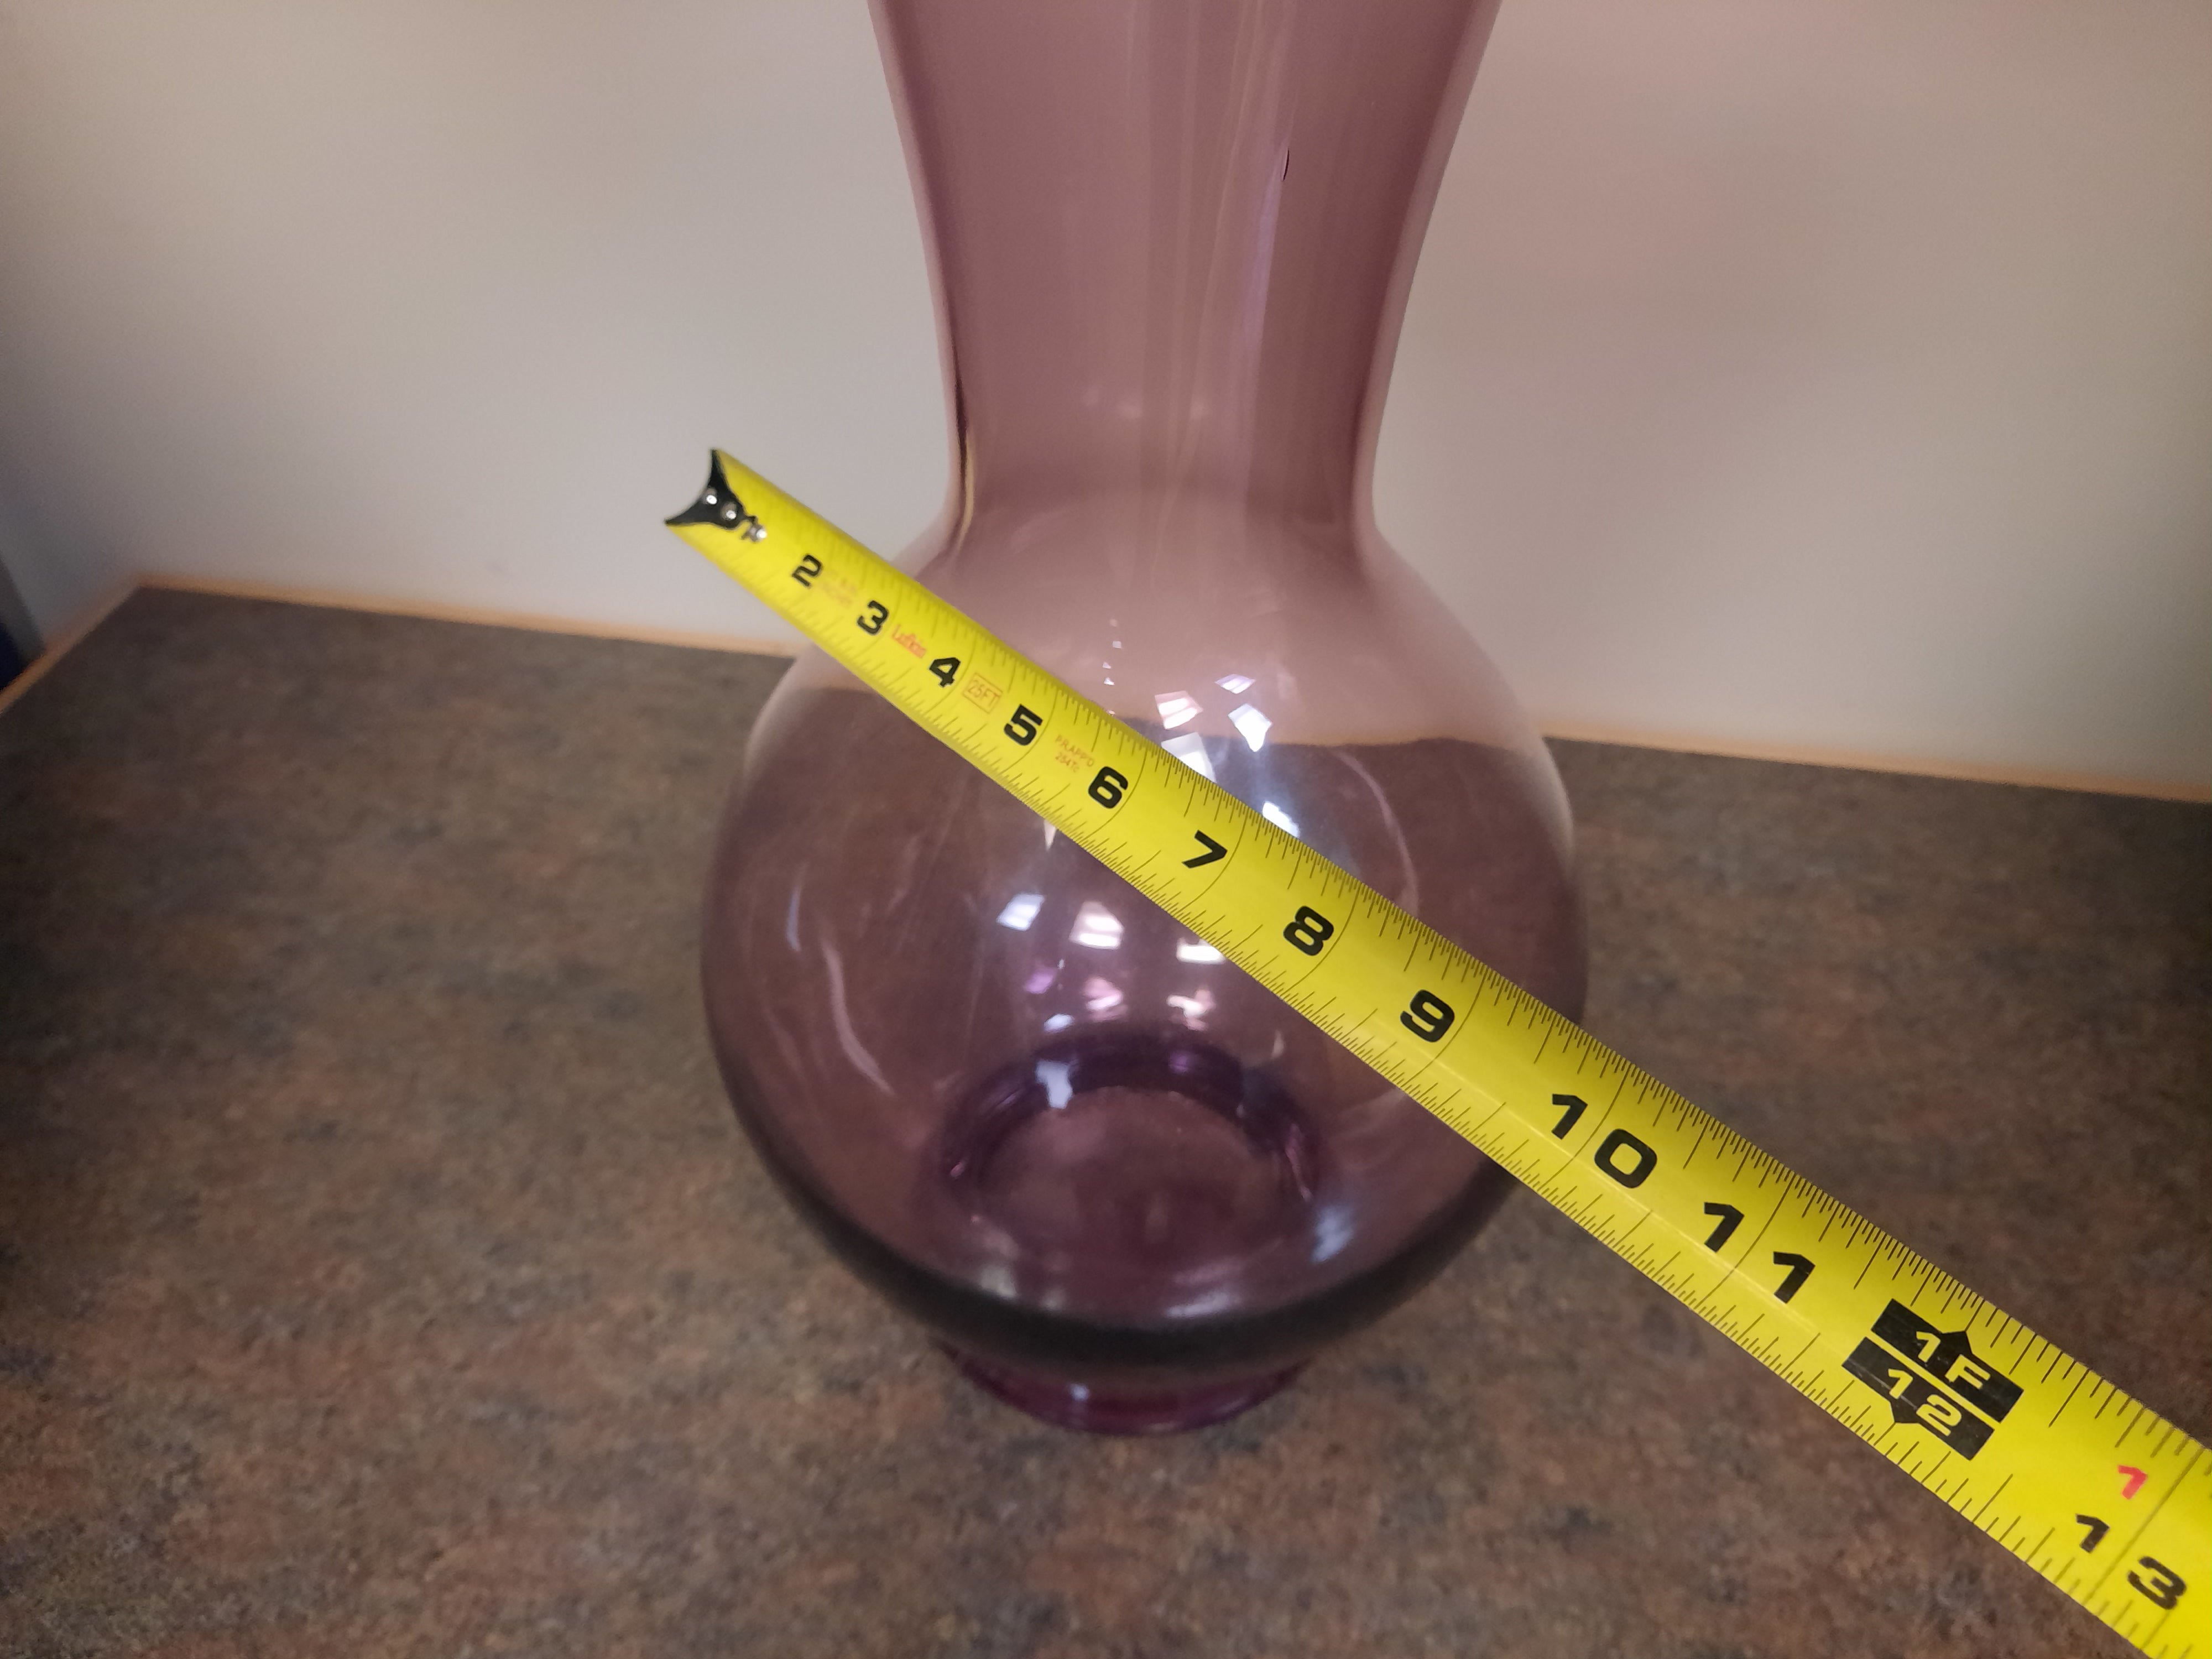 Large Purple Vase